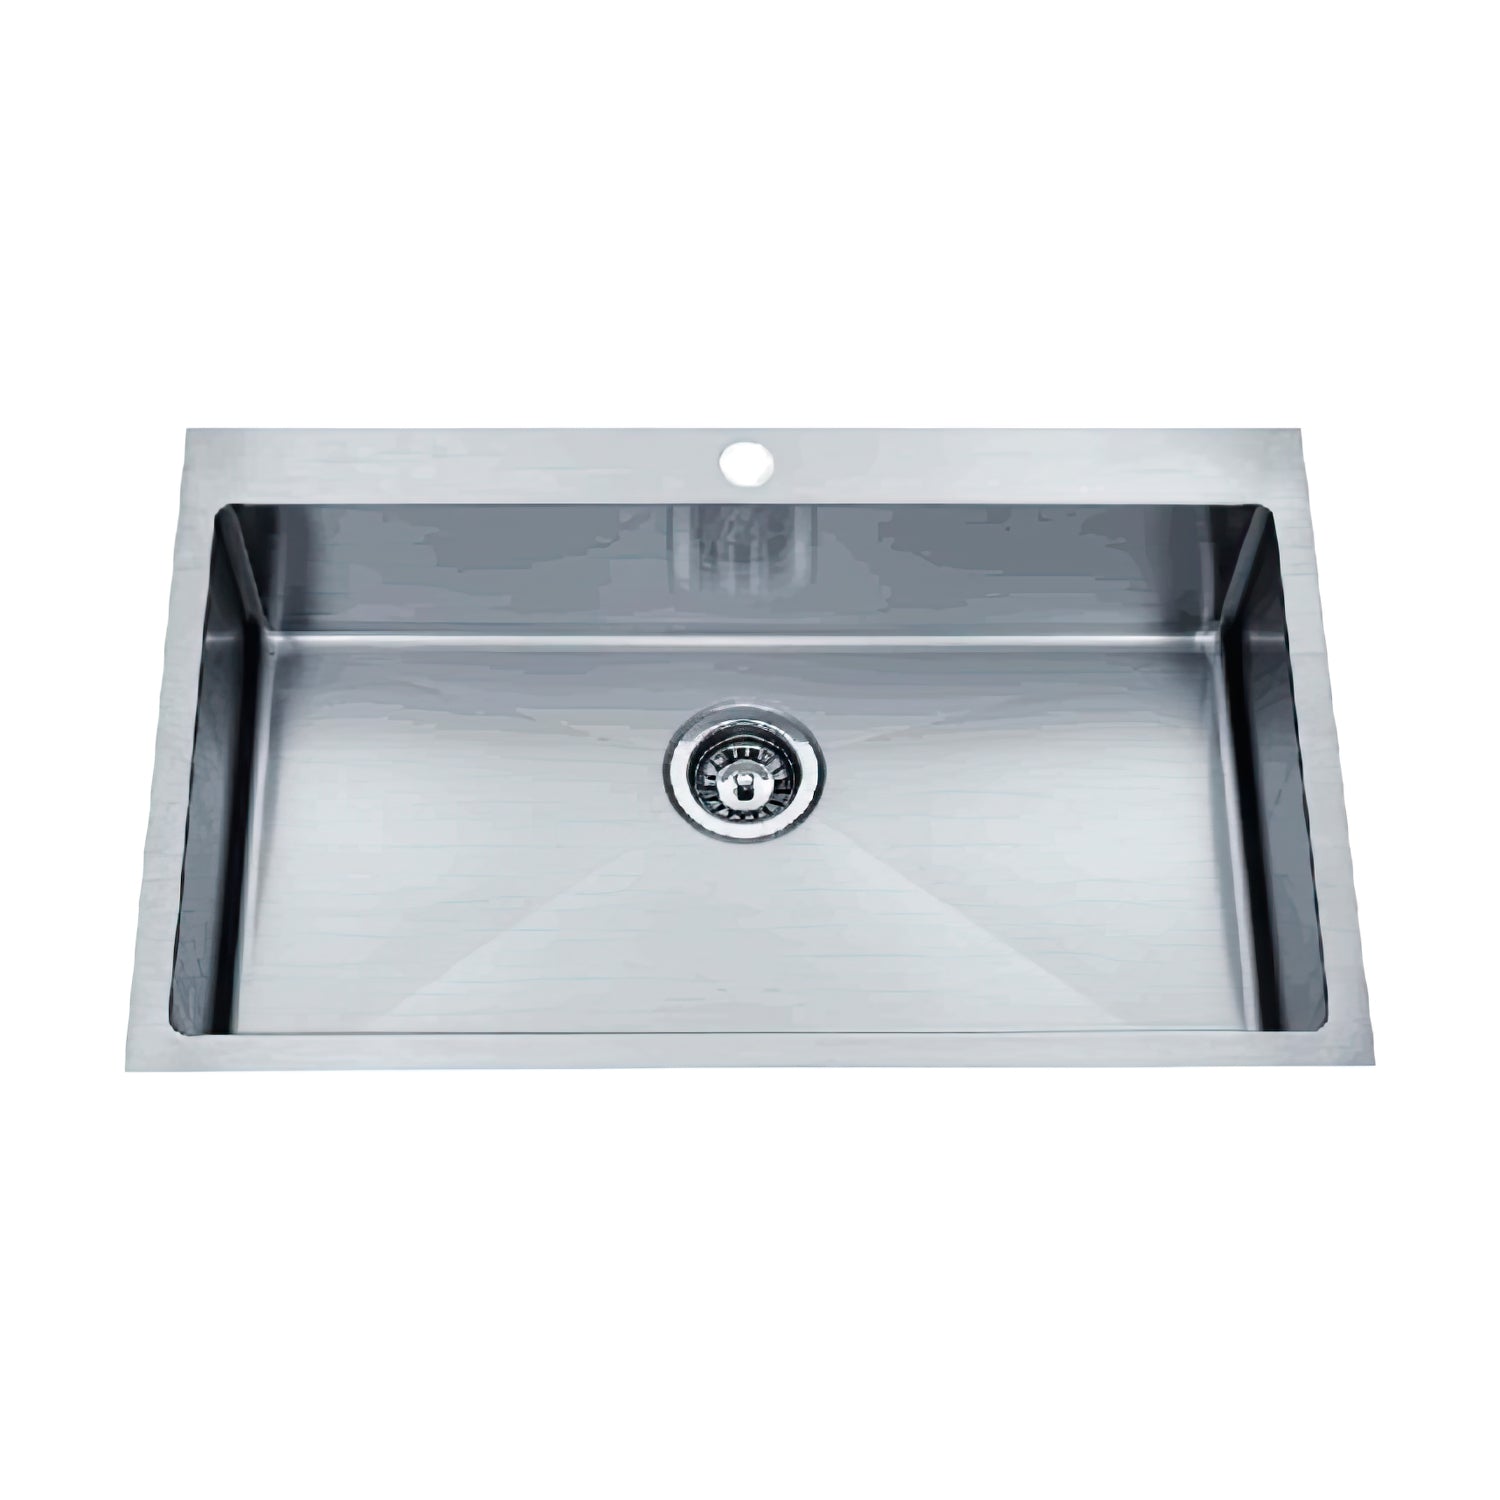 Unique Piato 820 Inset Sink 1 Taphole 820 x 510 x 250mm